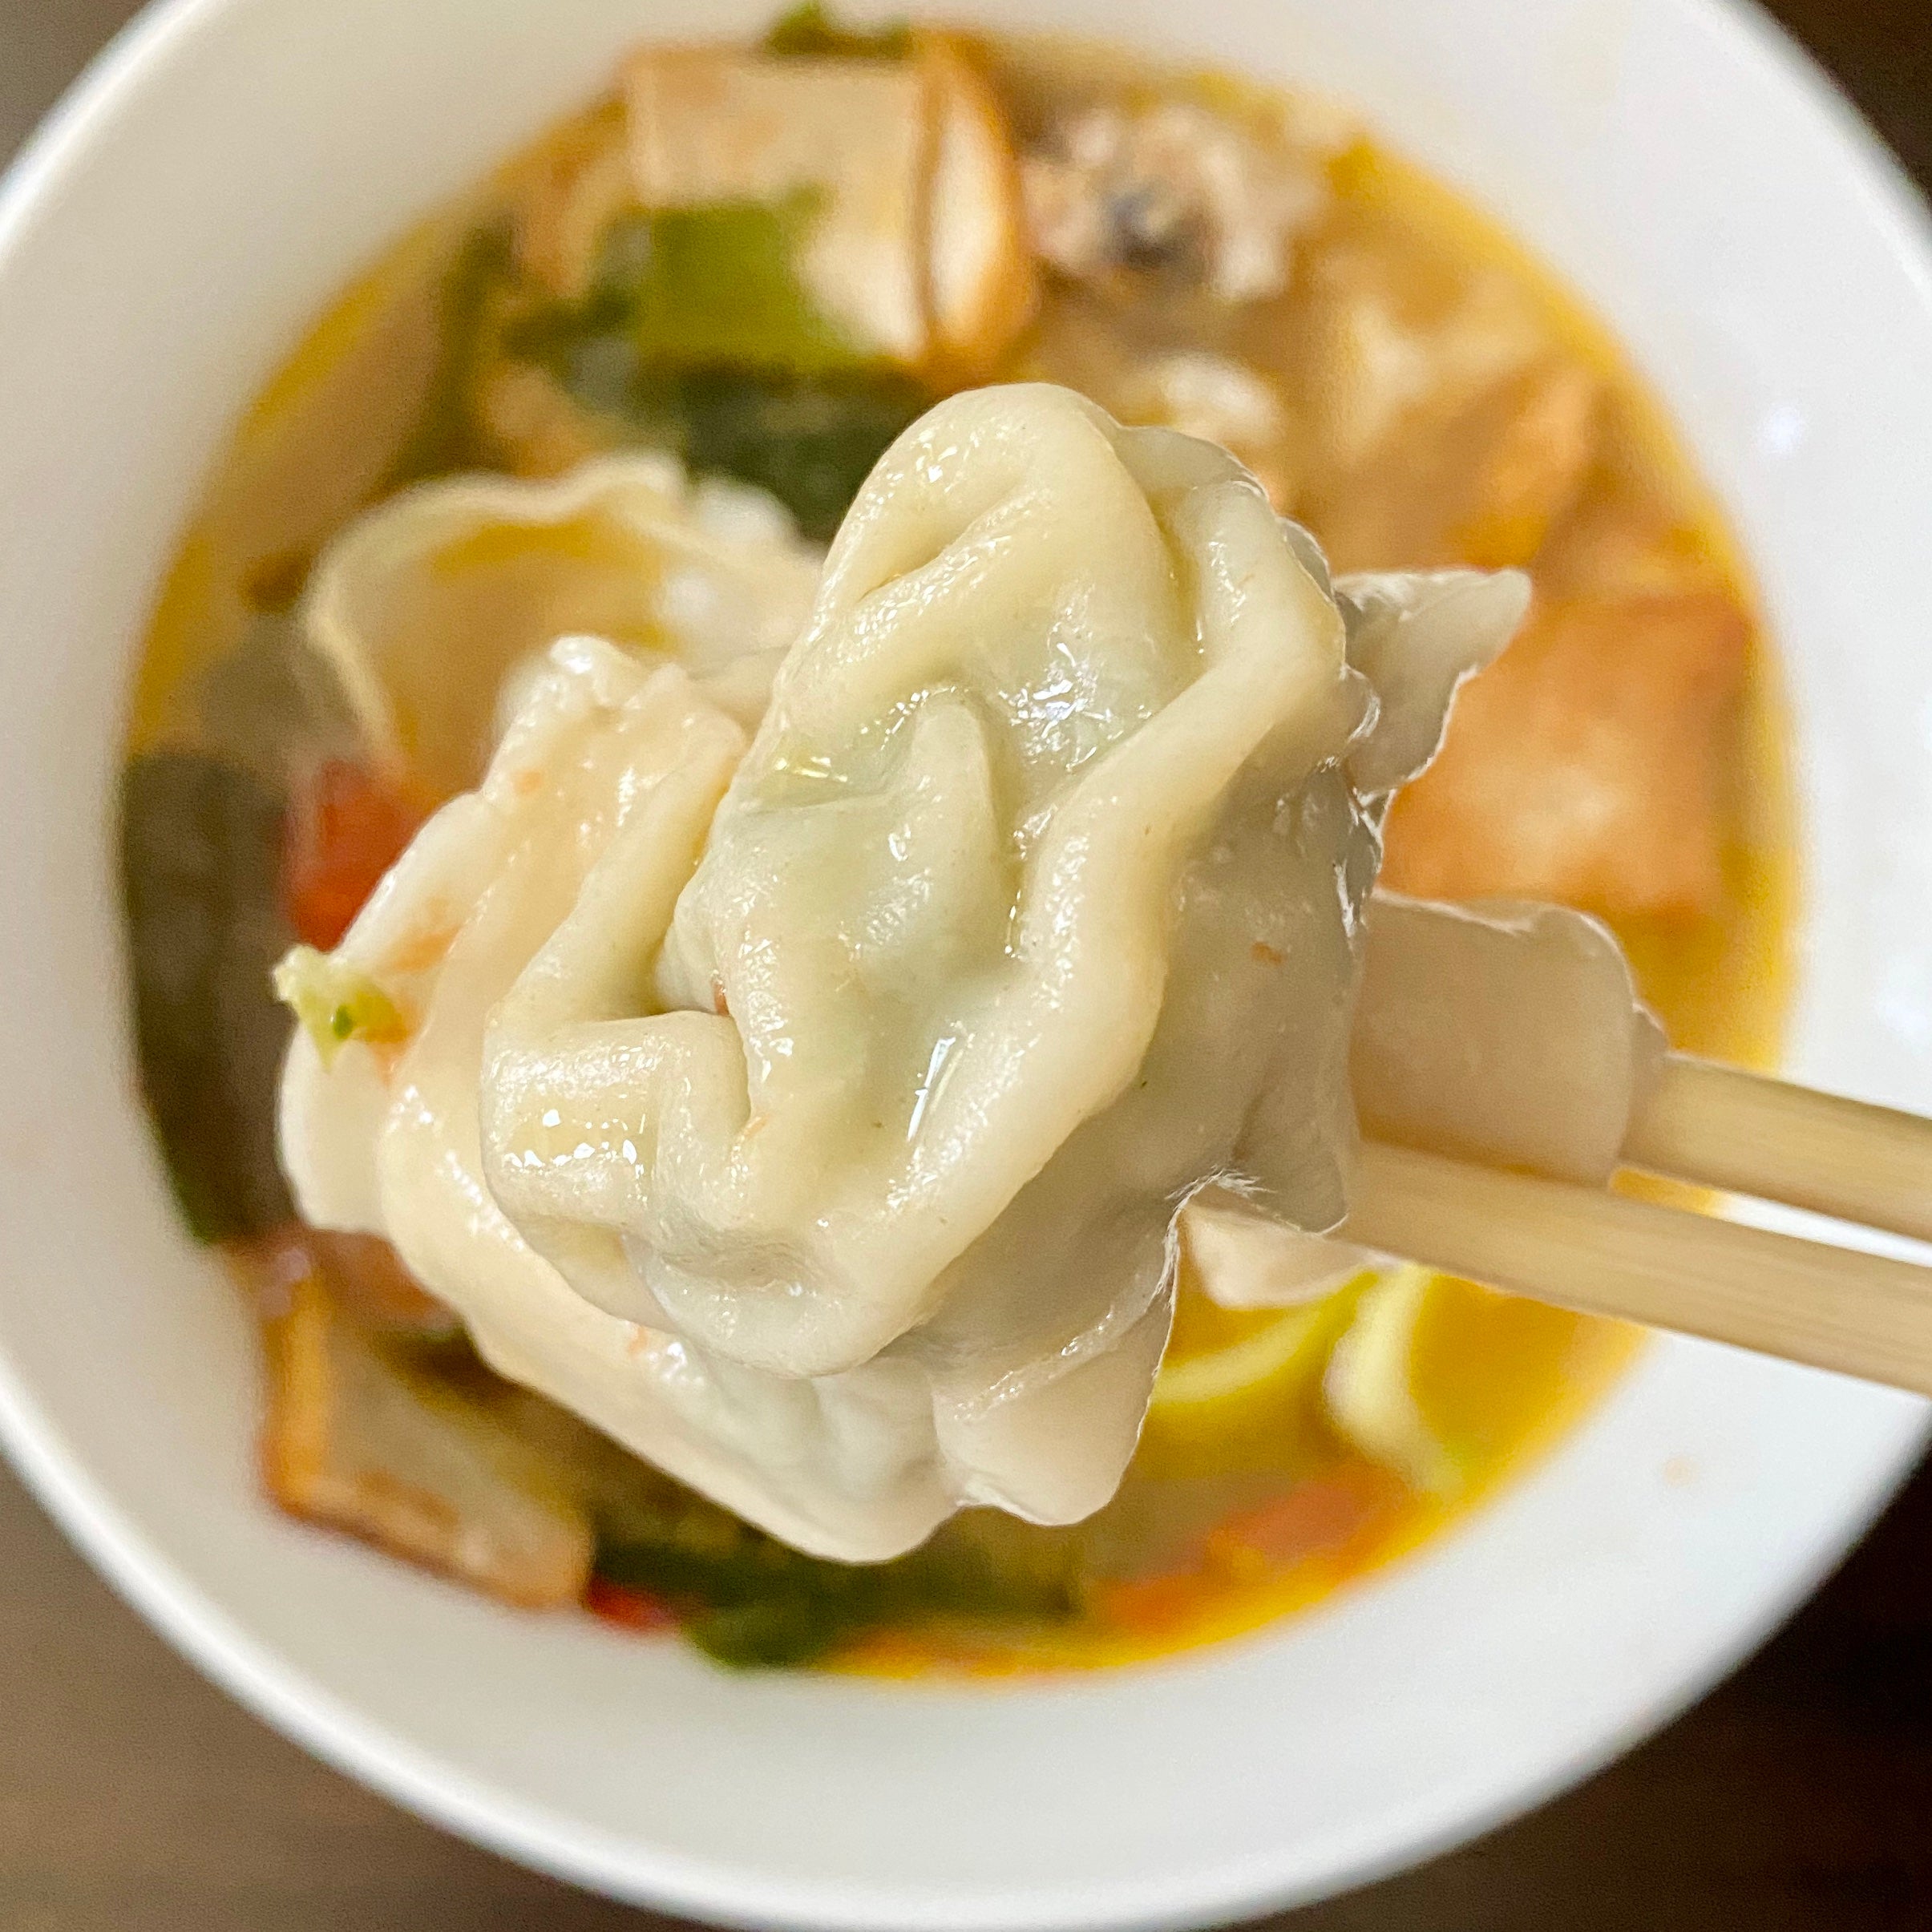 Shanghai Wonton (Chinese Spinach/Pork) - Yummi Dumplings